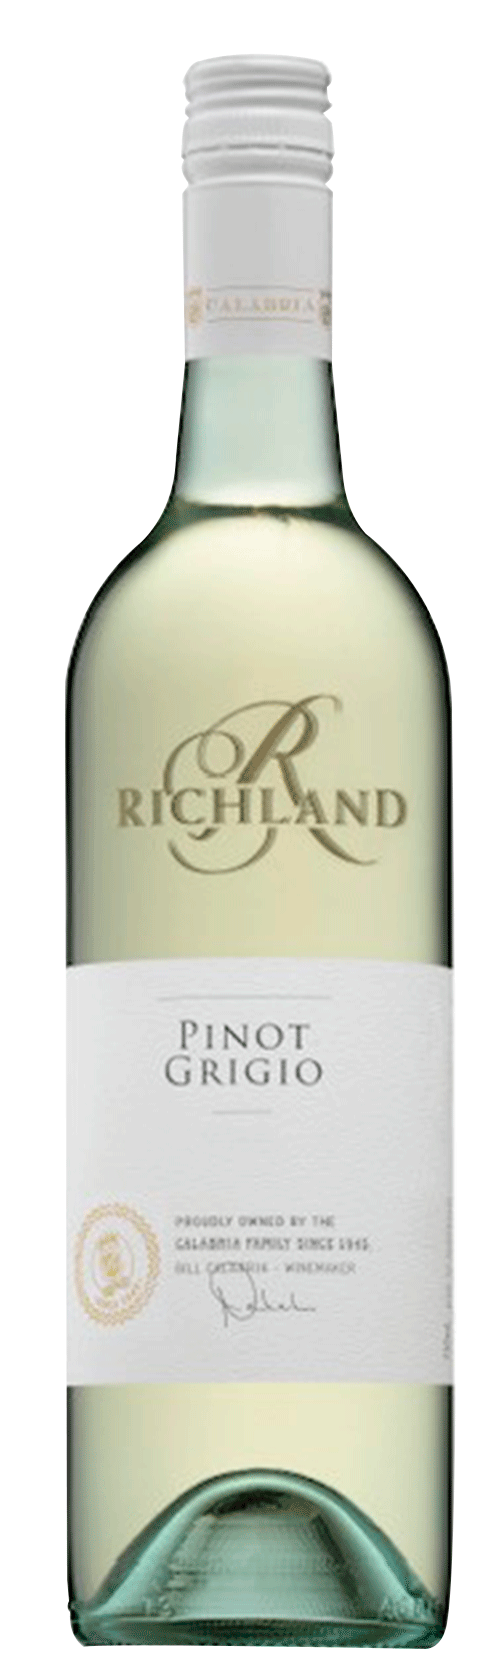 Richland Pinot Grigio 2018